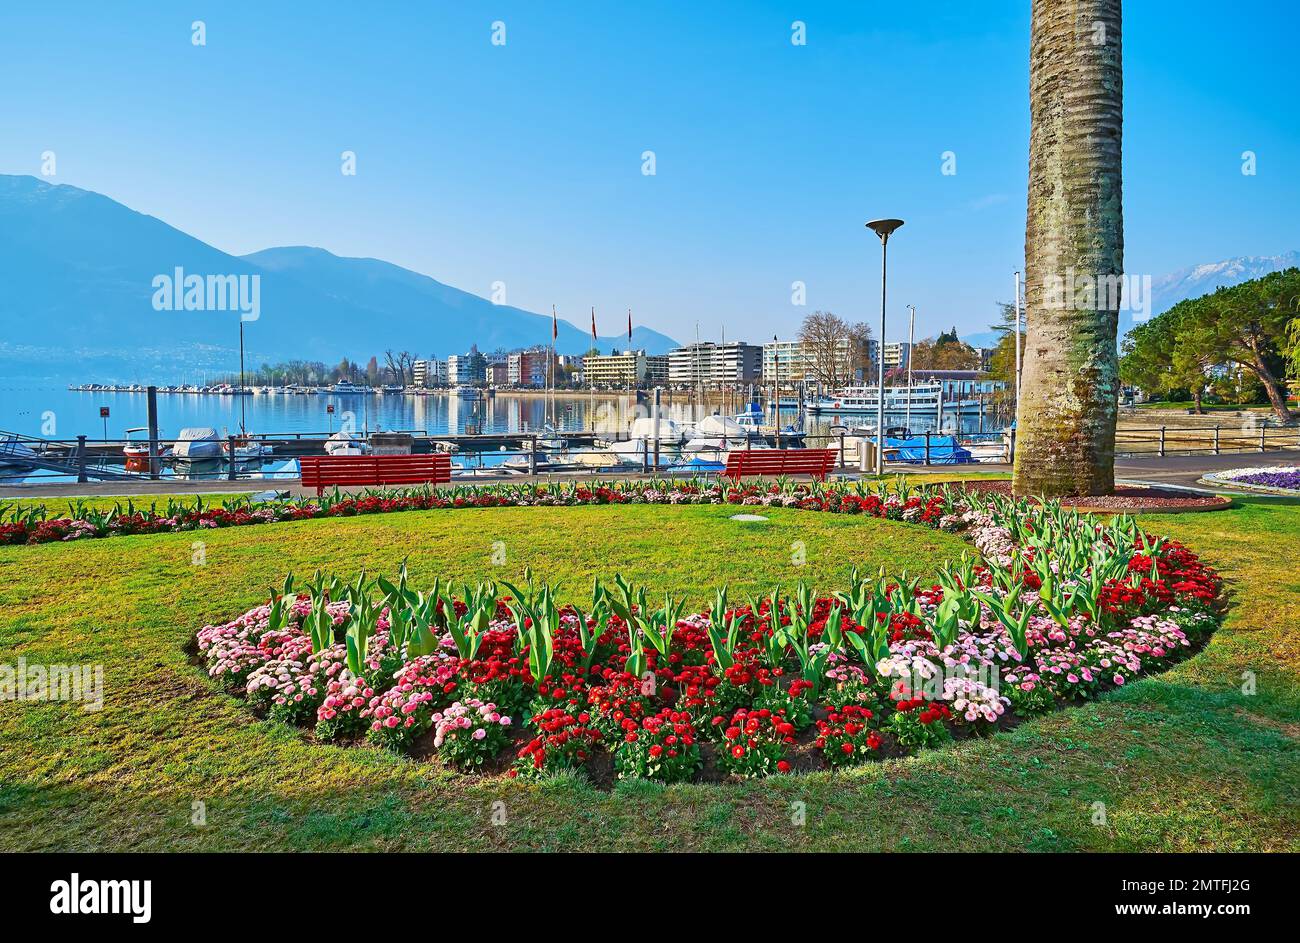 Il parco sul lago con prato verde, aiuole ornamentali di margherite rosse e rosa contro la parte e le Alpi nebbie, il Lago maggiore, Locarno, Svizzera Foto Stock